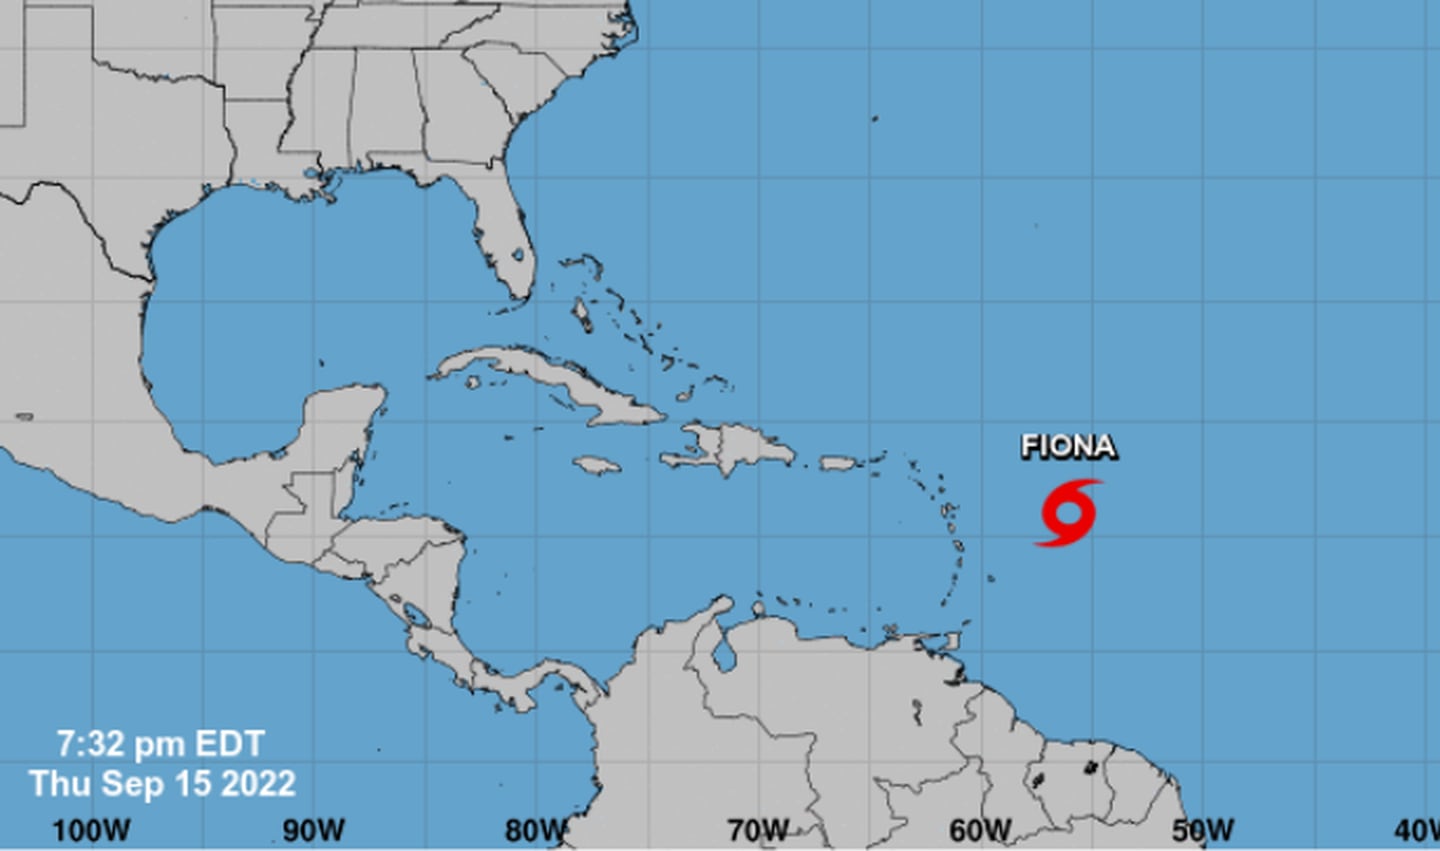 Este 15 de setiembre se formó la tormenta tropical Fiona, según expertos se enrumbará al norte sin afectación alguna para el istmo centroamericano. Imagen: Centro Nacional de Huracanes.